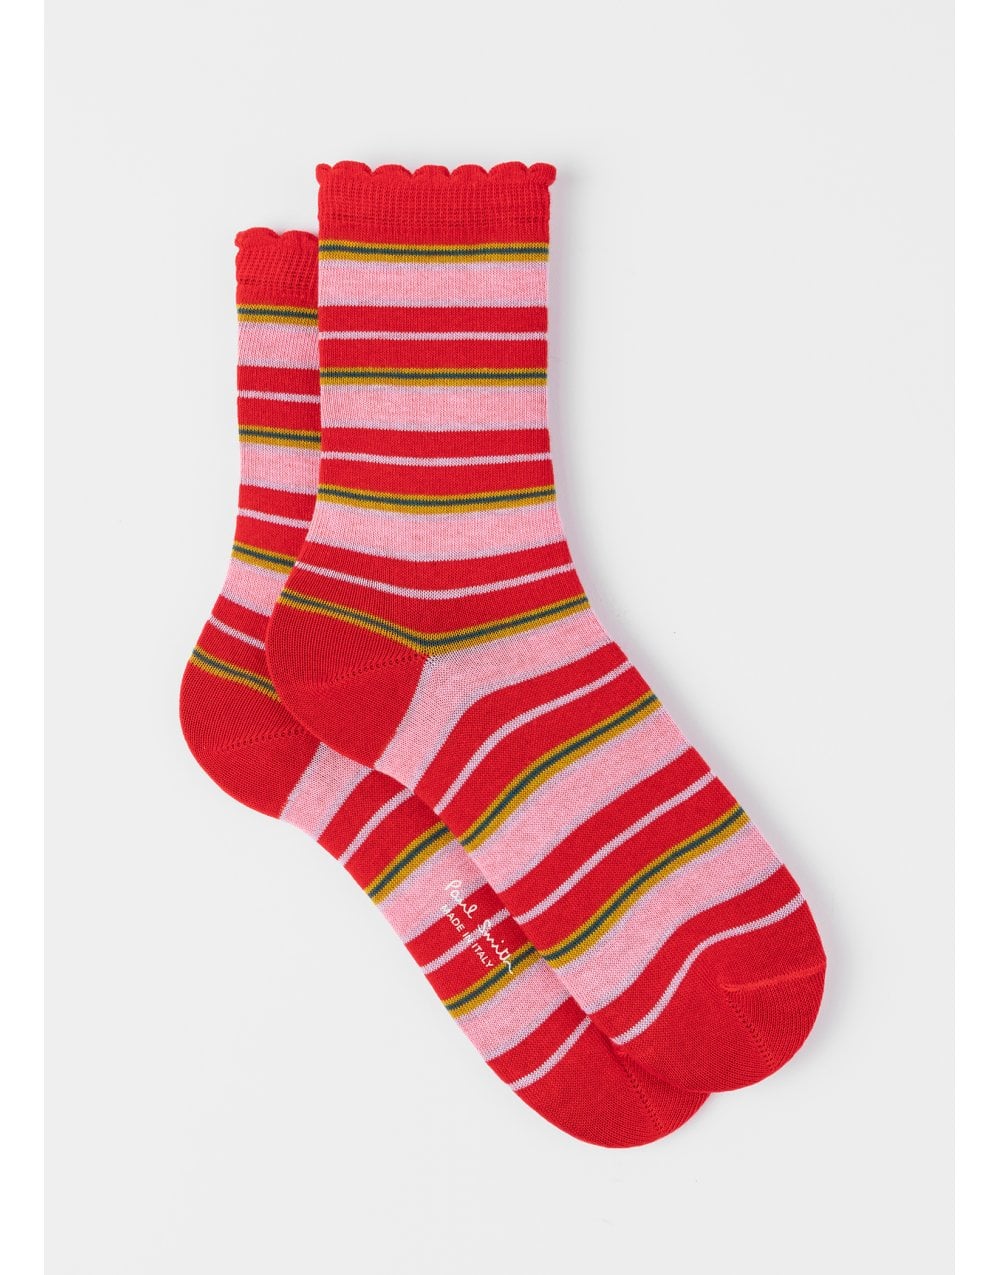 paul-smith-paul-smith-emilia-stripes-frill-socks-col-reds-size-os